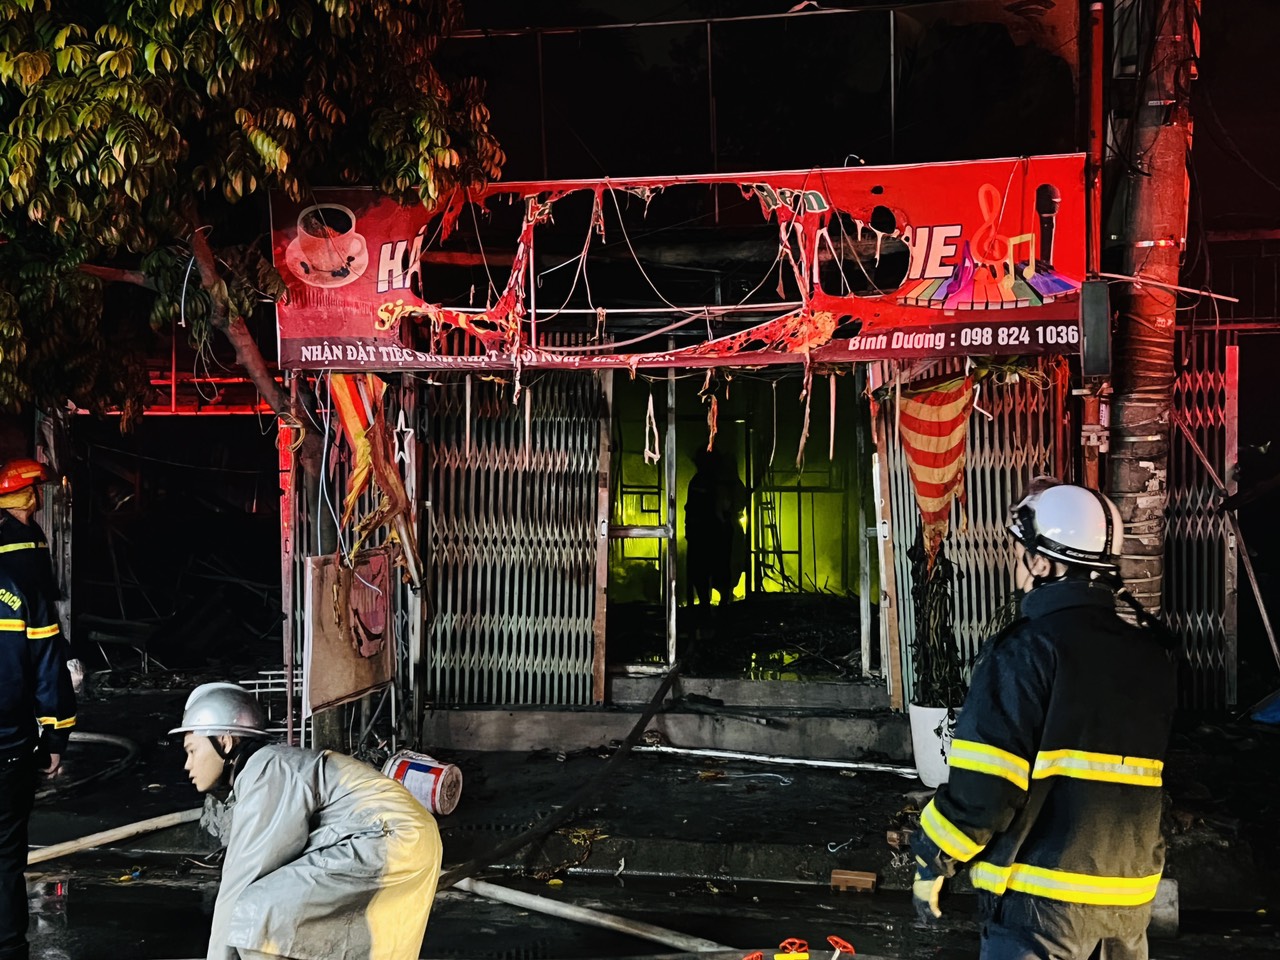 Hà Nội: Hàng chục chiến sĩ PCCC dập tắt đám cháy tại 4 nhà dân trong đêm - Ảnh 1.